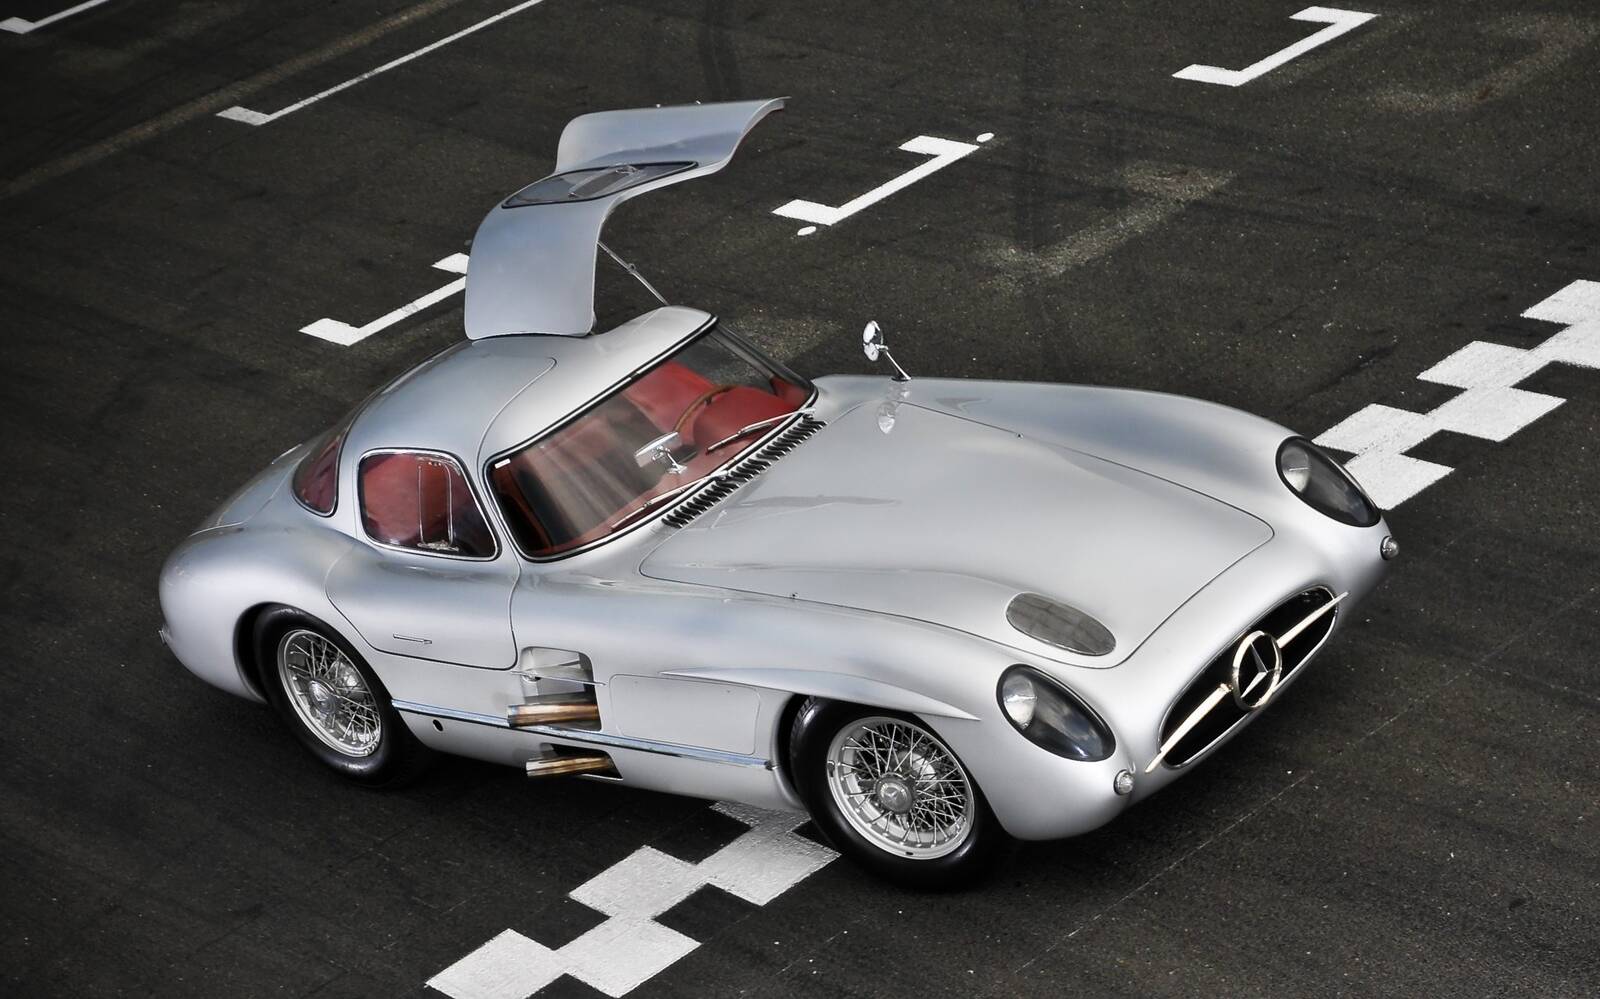 Une Mercedes-Benz Silver Arrow aurait été vendue pour 182 M$ 524043-une-mercedes-benz-300-slr-uhlenhaut-1956-aurait-ete-vendue-pour-182-m